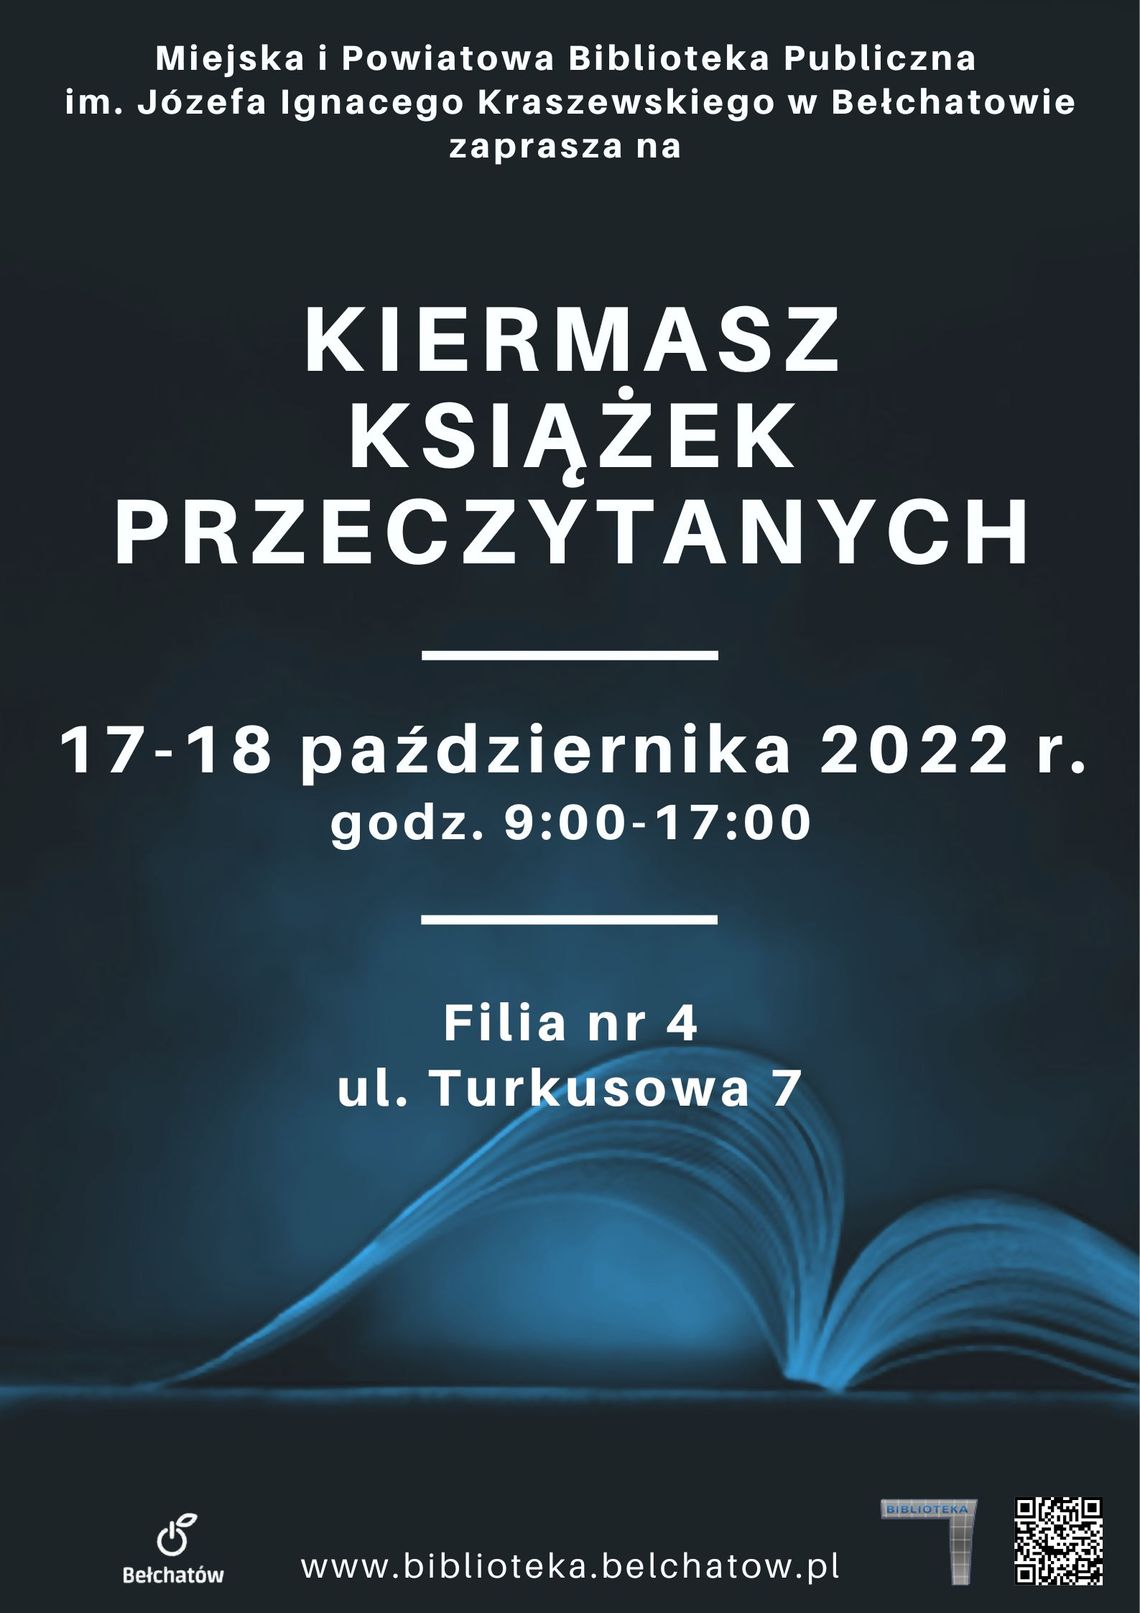 MiPBP w Bełchatowie zaprasza na Kiermasz książek przeczytanych